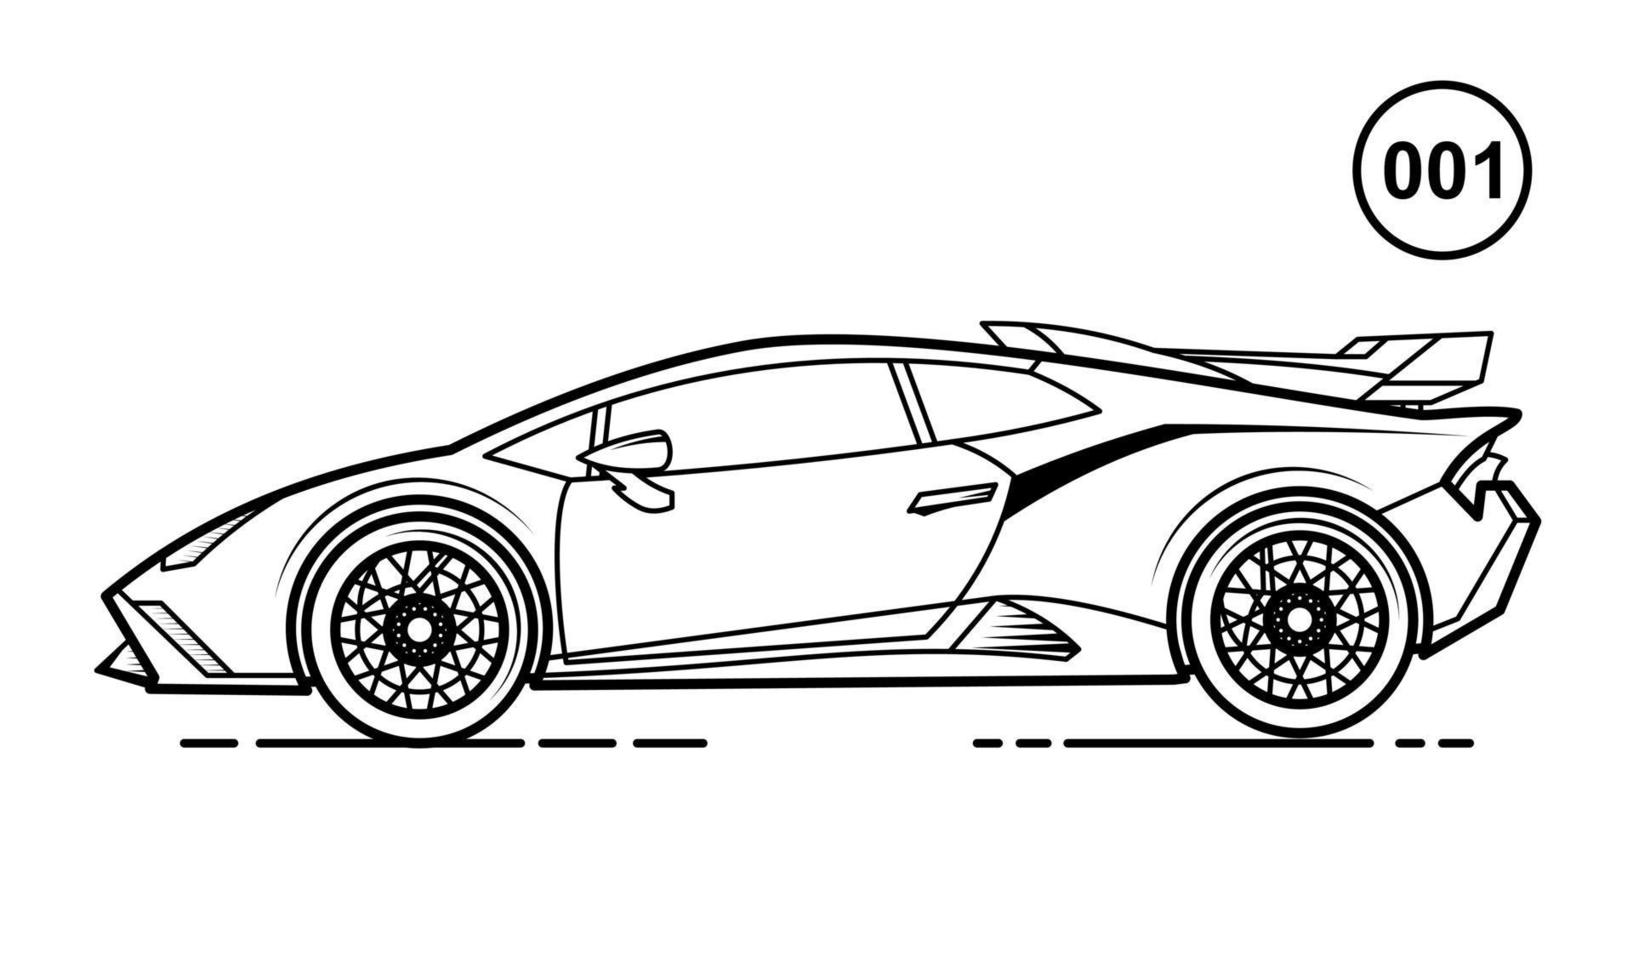 diseño de esquema de coche deportivo para el estilo de libro de dibujo 001 vector